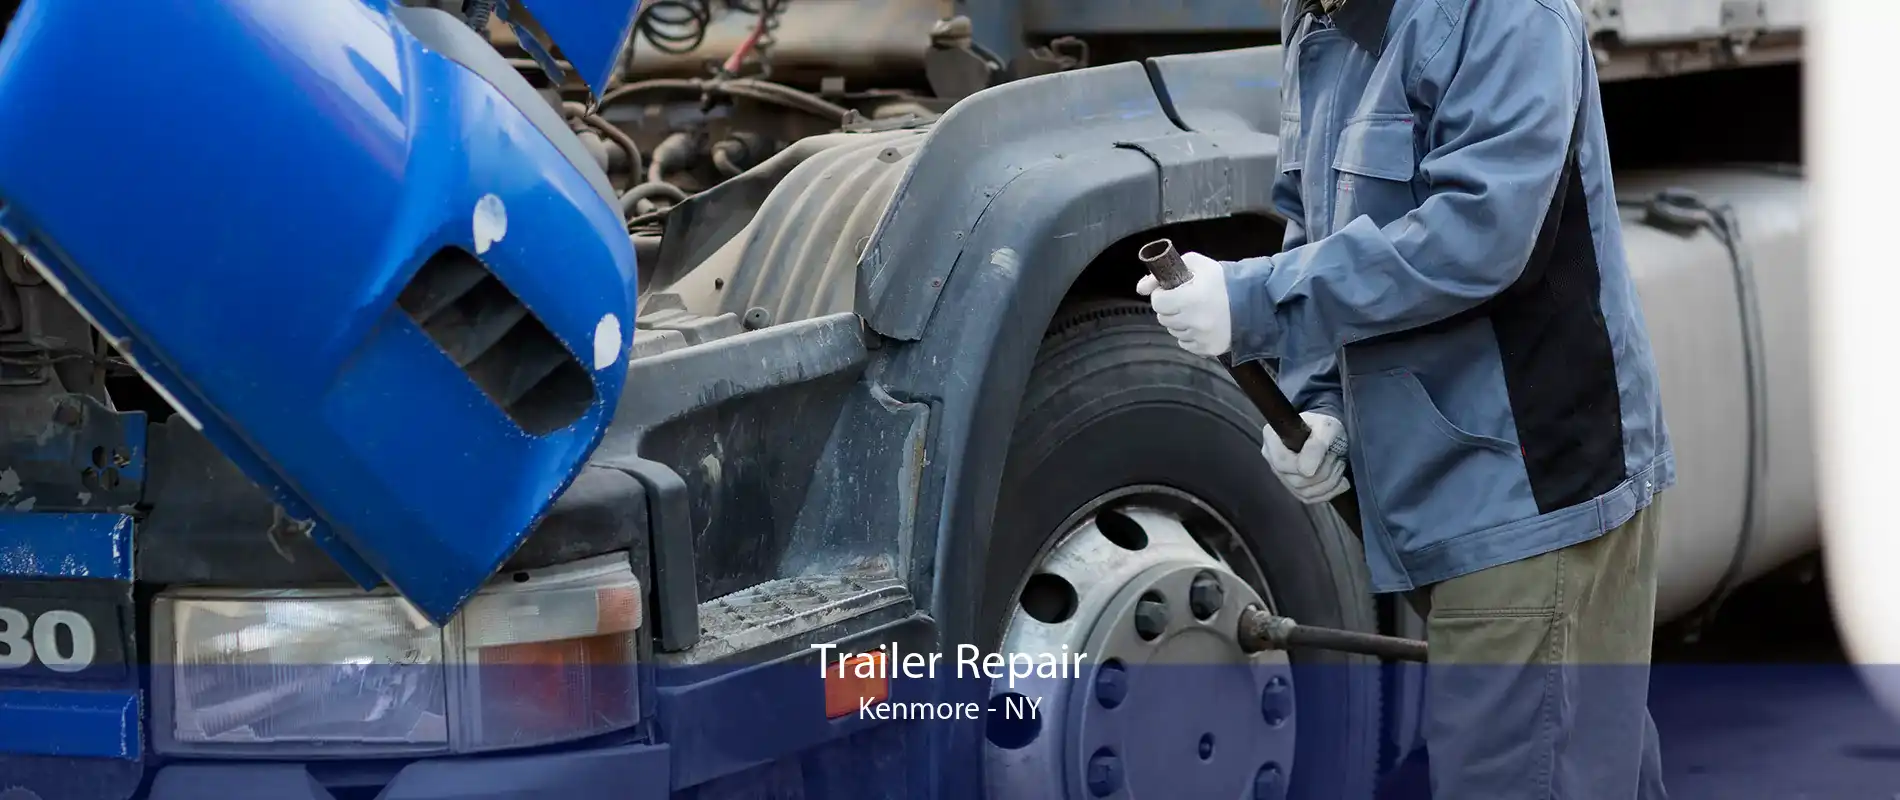 Trailer Repair Kenmore - NY